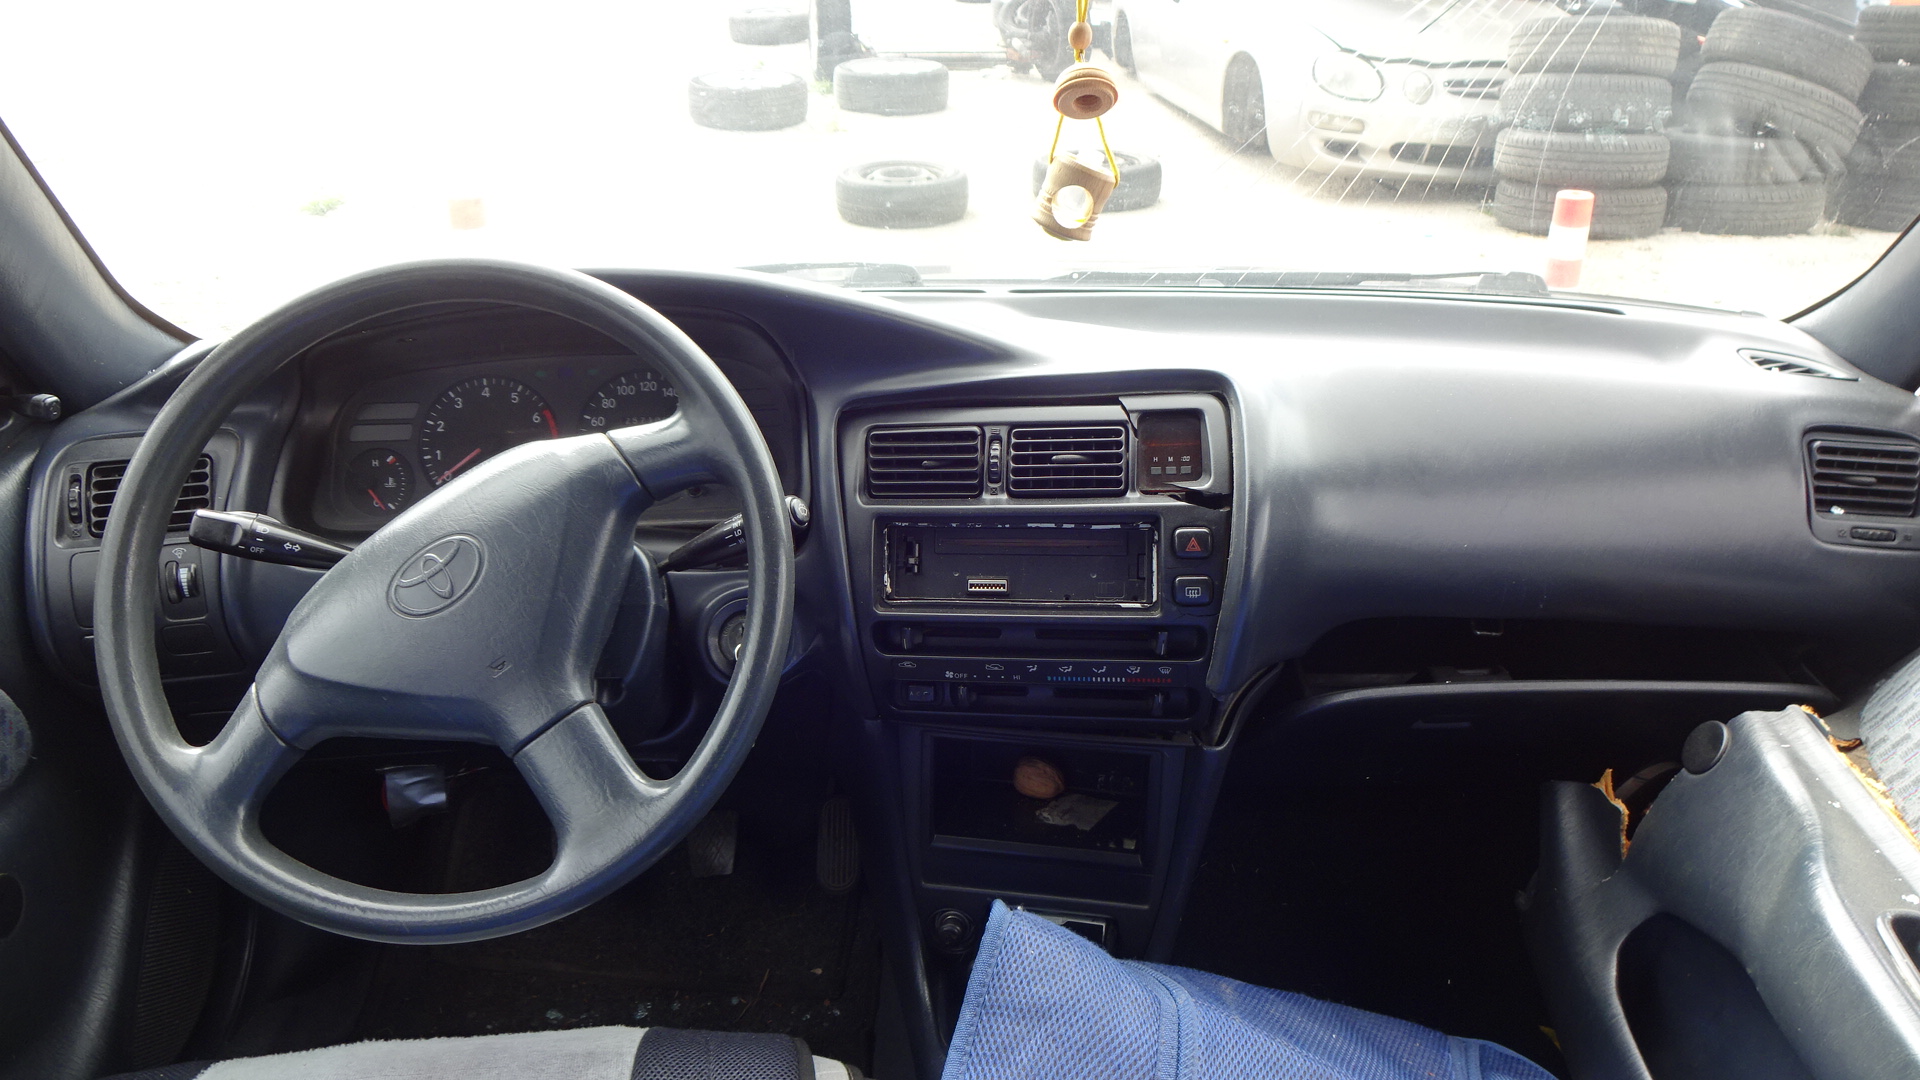 Φιλτροκούτι Toyota Corolla ’97 Προσφορά.